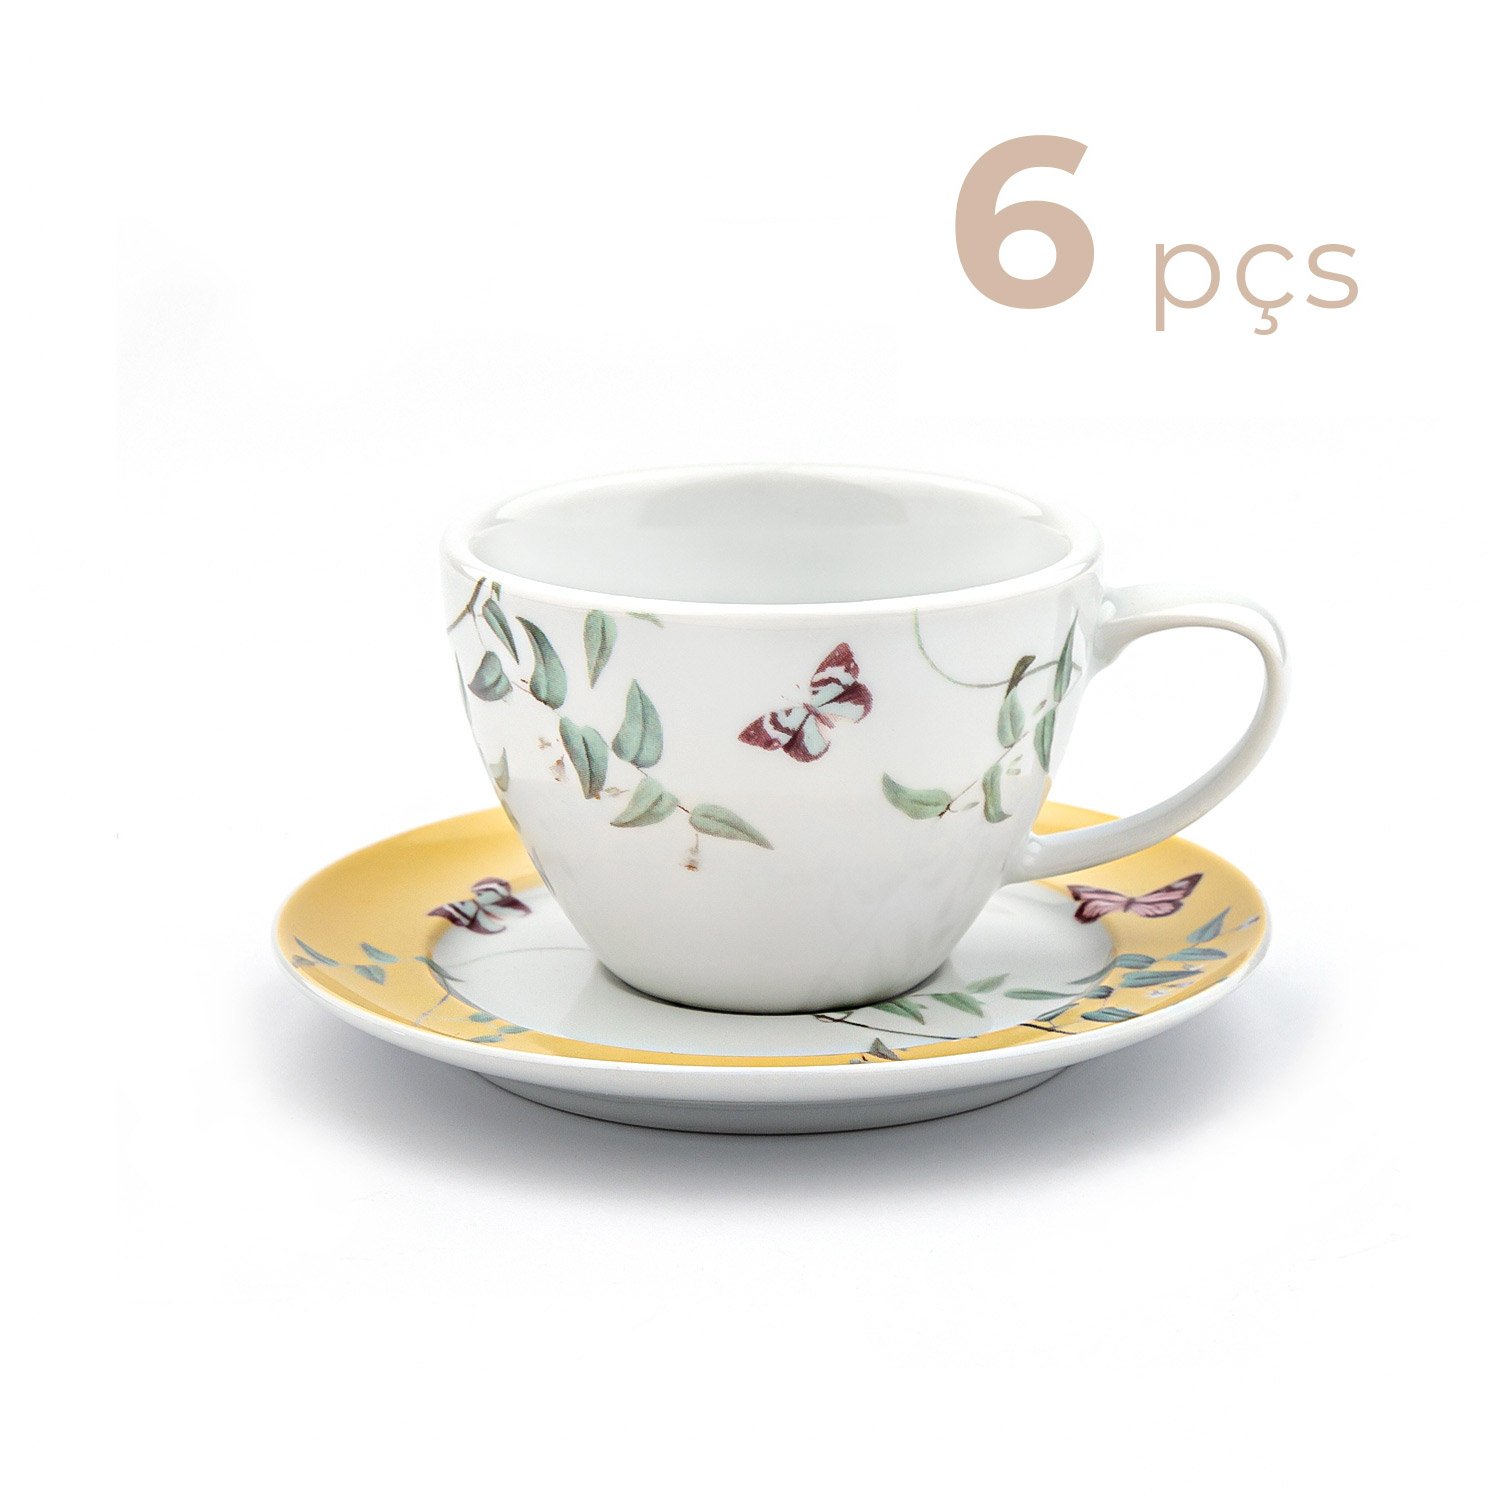 320 melhor ideia de Jogo de chá porcelana  jogo de chá porcelana, jogo de  chá, porcelana